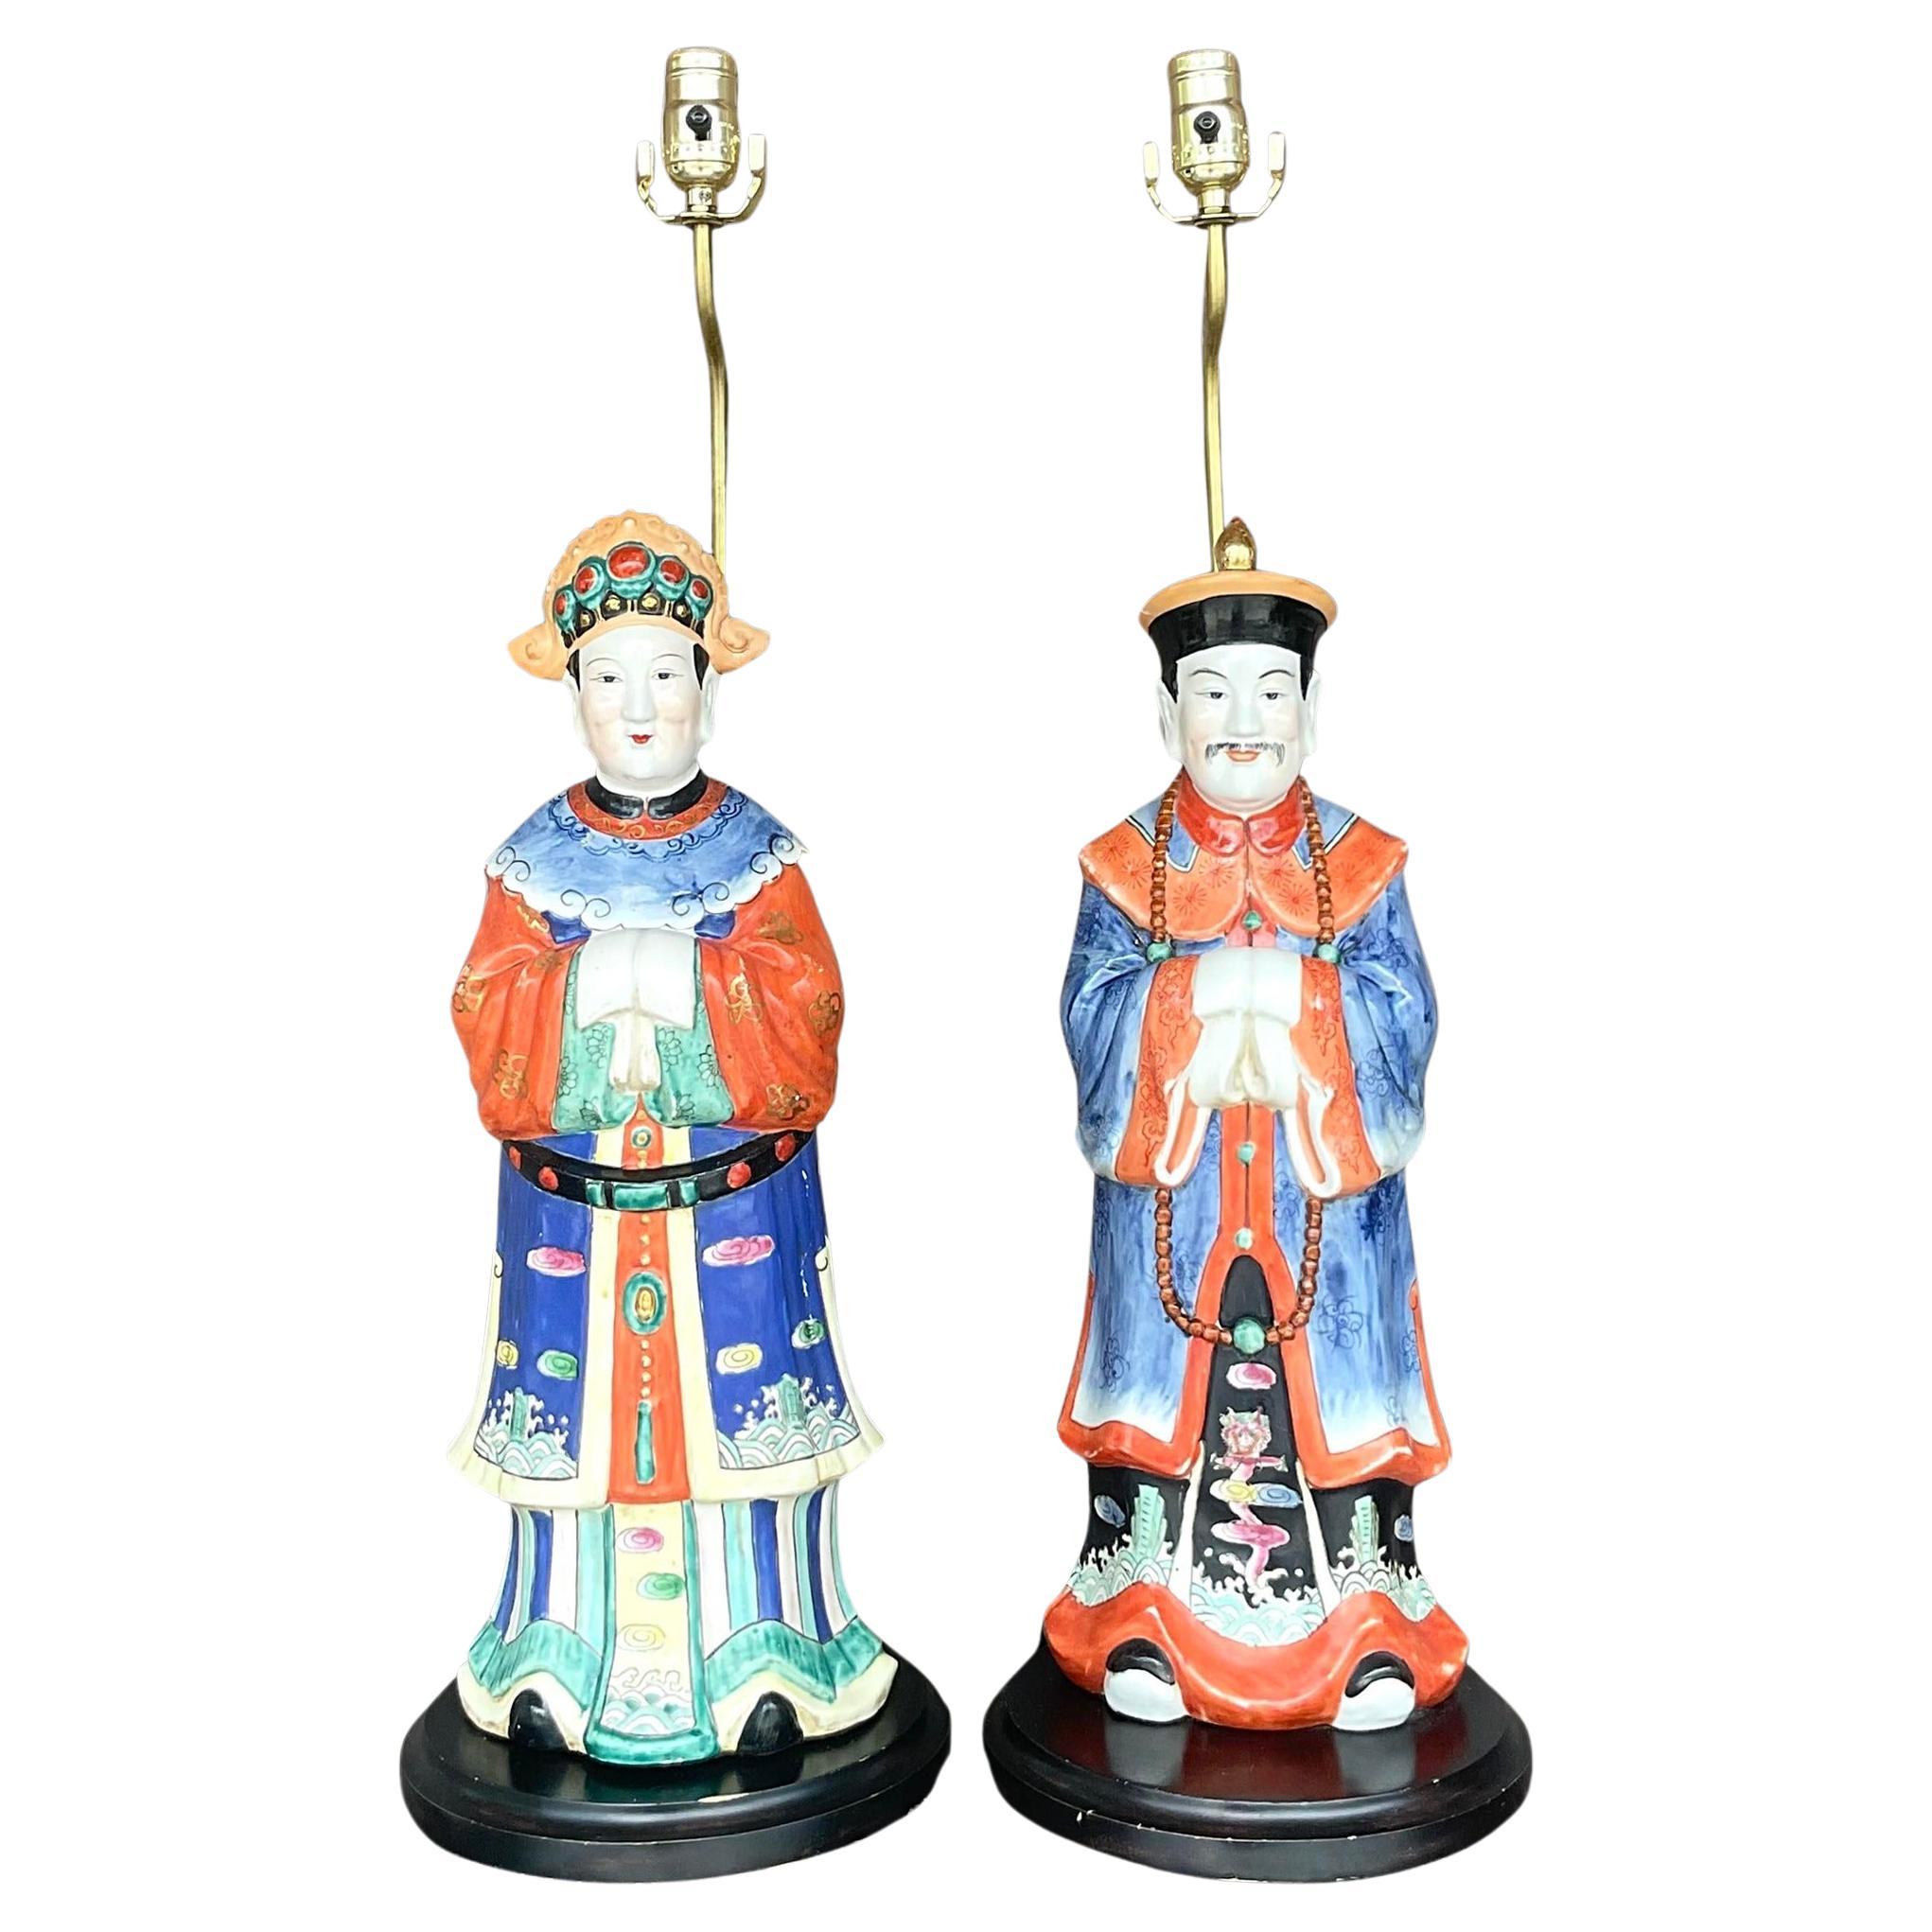 Paire de lampes empereur vintage en céramique glacée asiatique